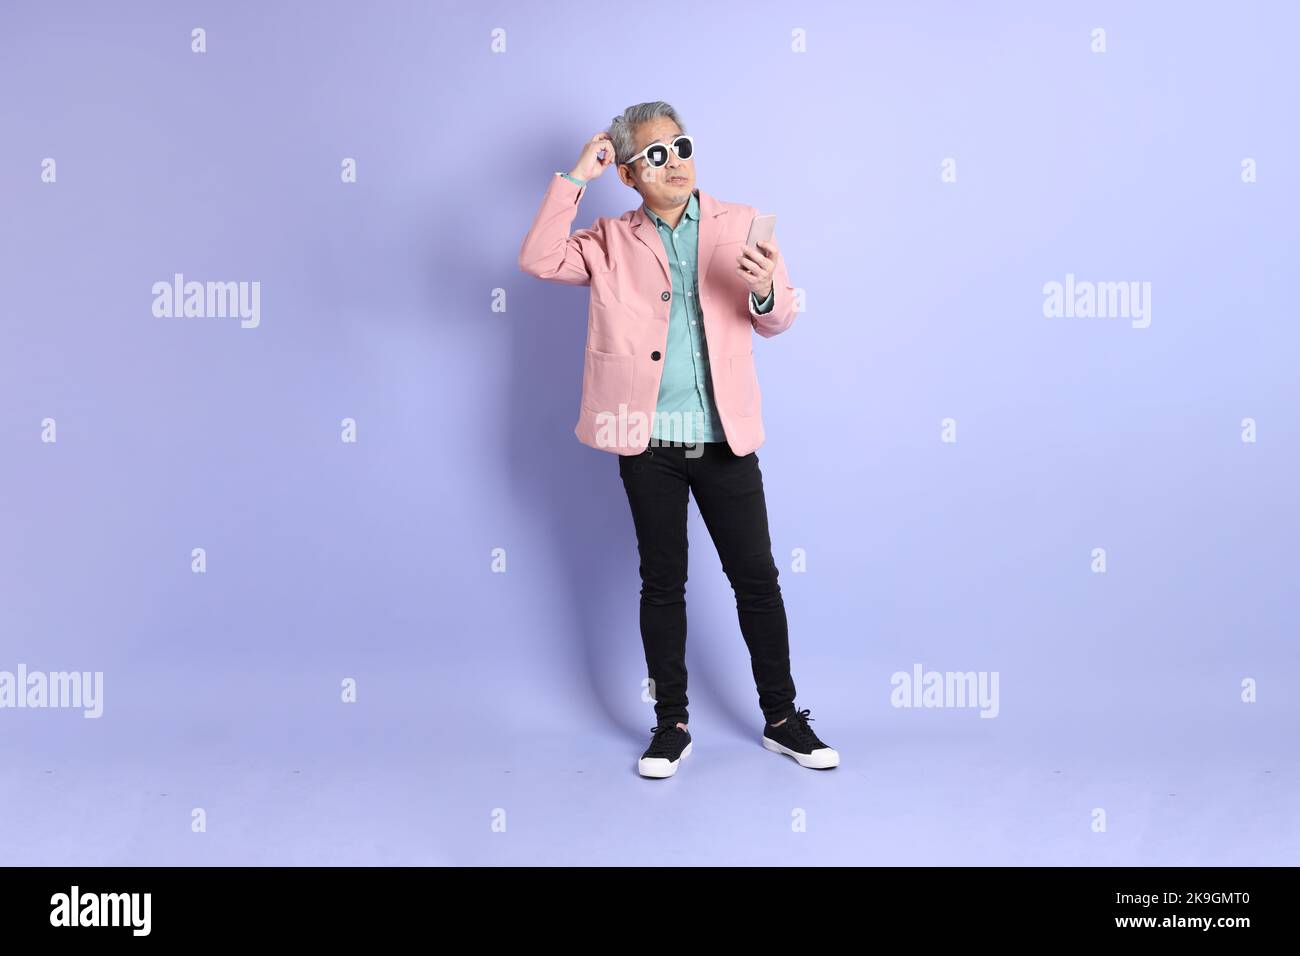 Der 40s-jährige asiatische Mann, der auf dem violetten Hintergrund mit eleganter Freizeitkleidung unterwegs ist. Stockfoto